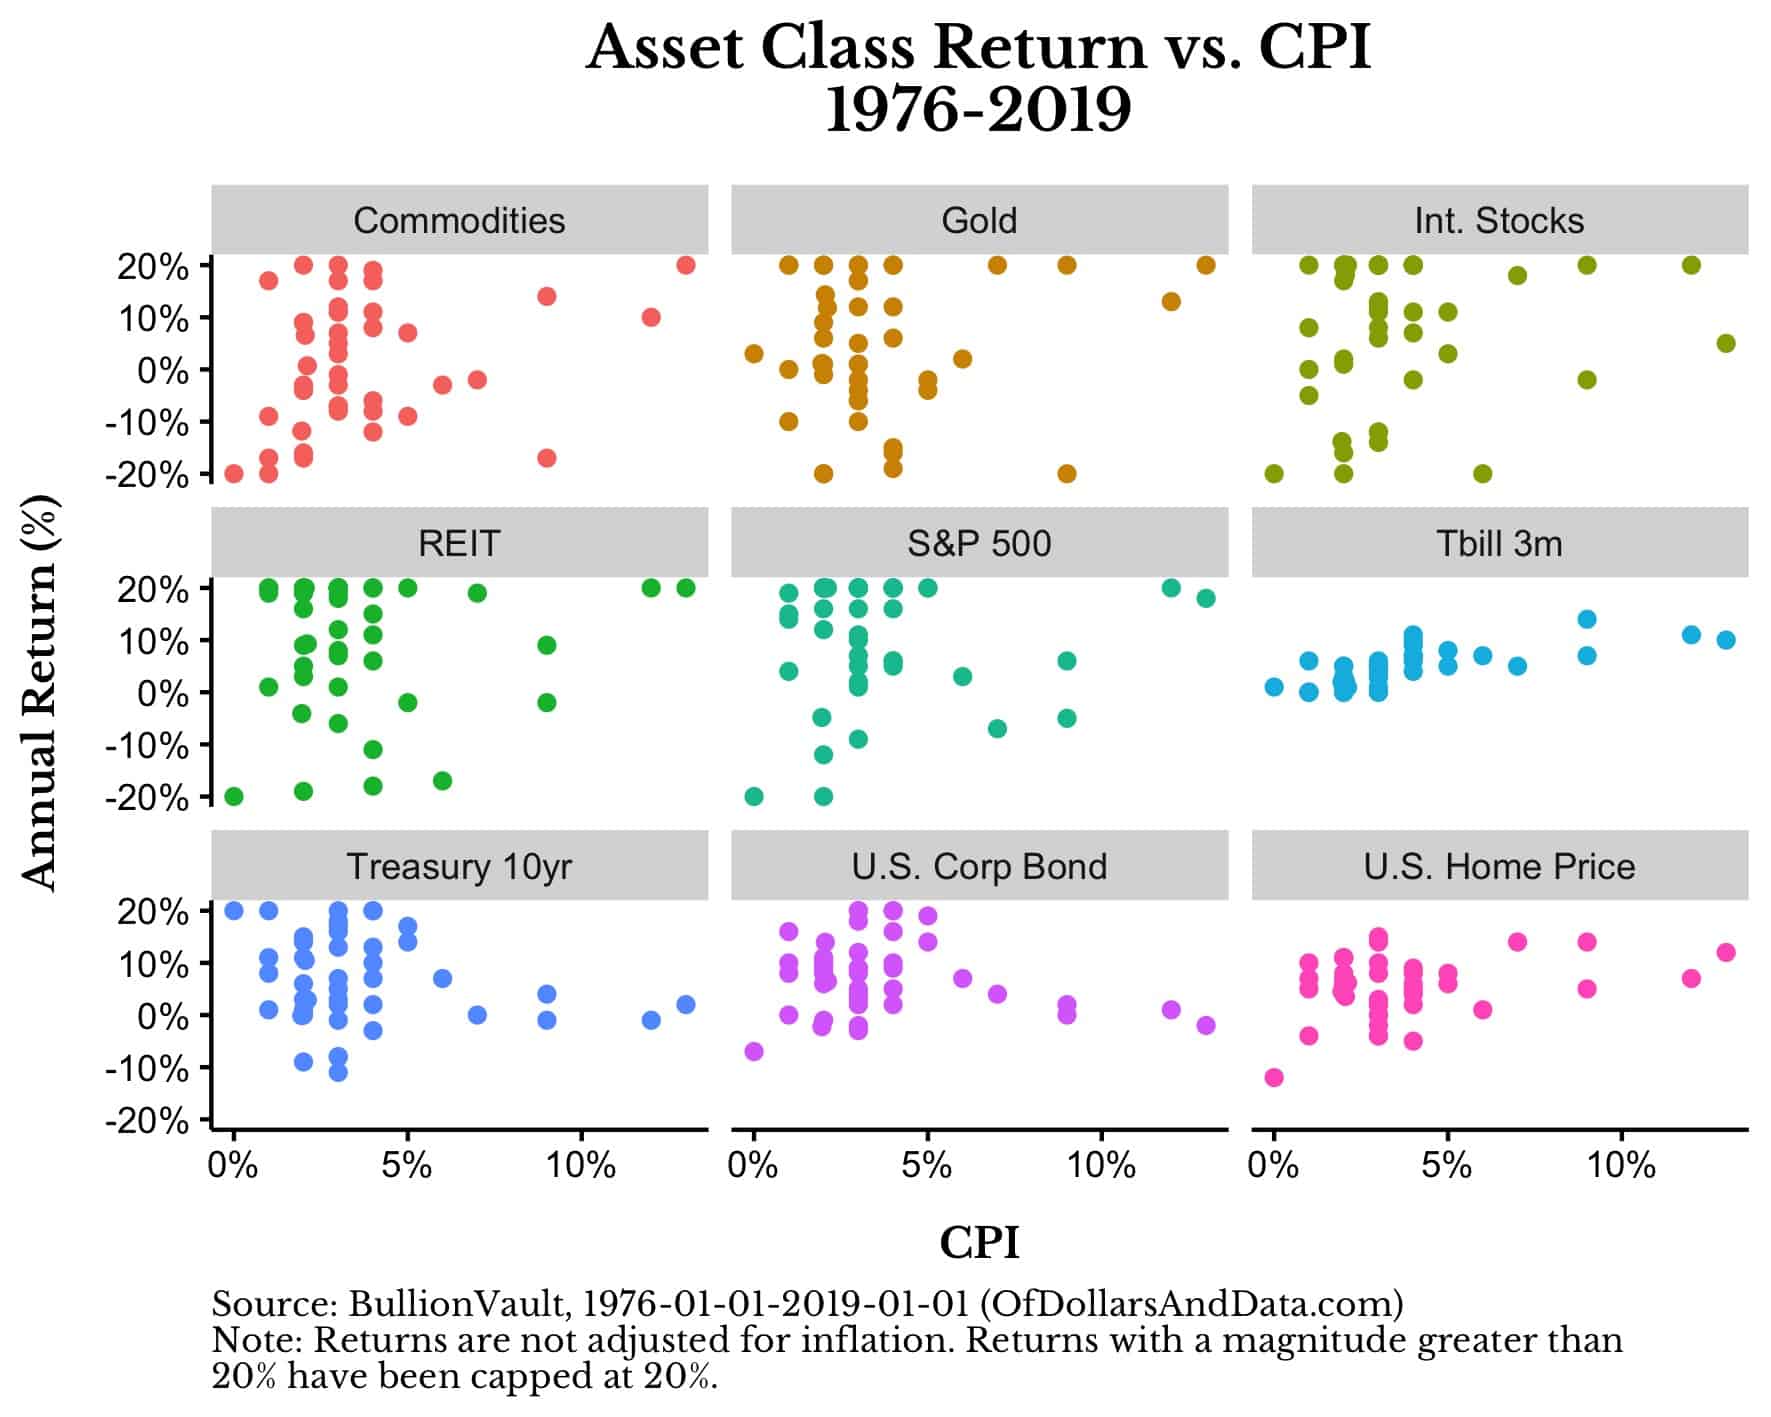 Asset class returns vs CPI for various asset classes, 1976-2019